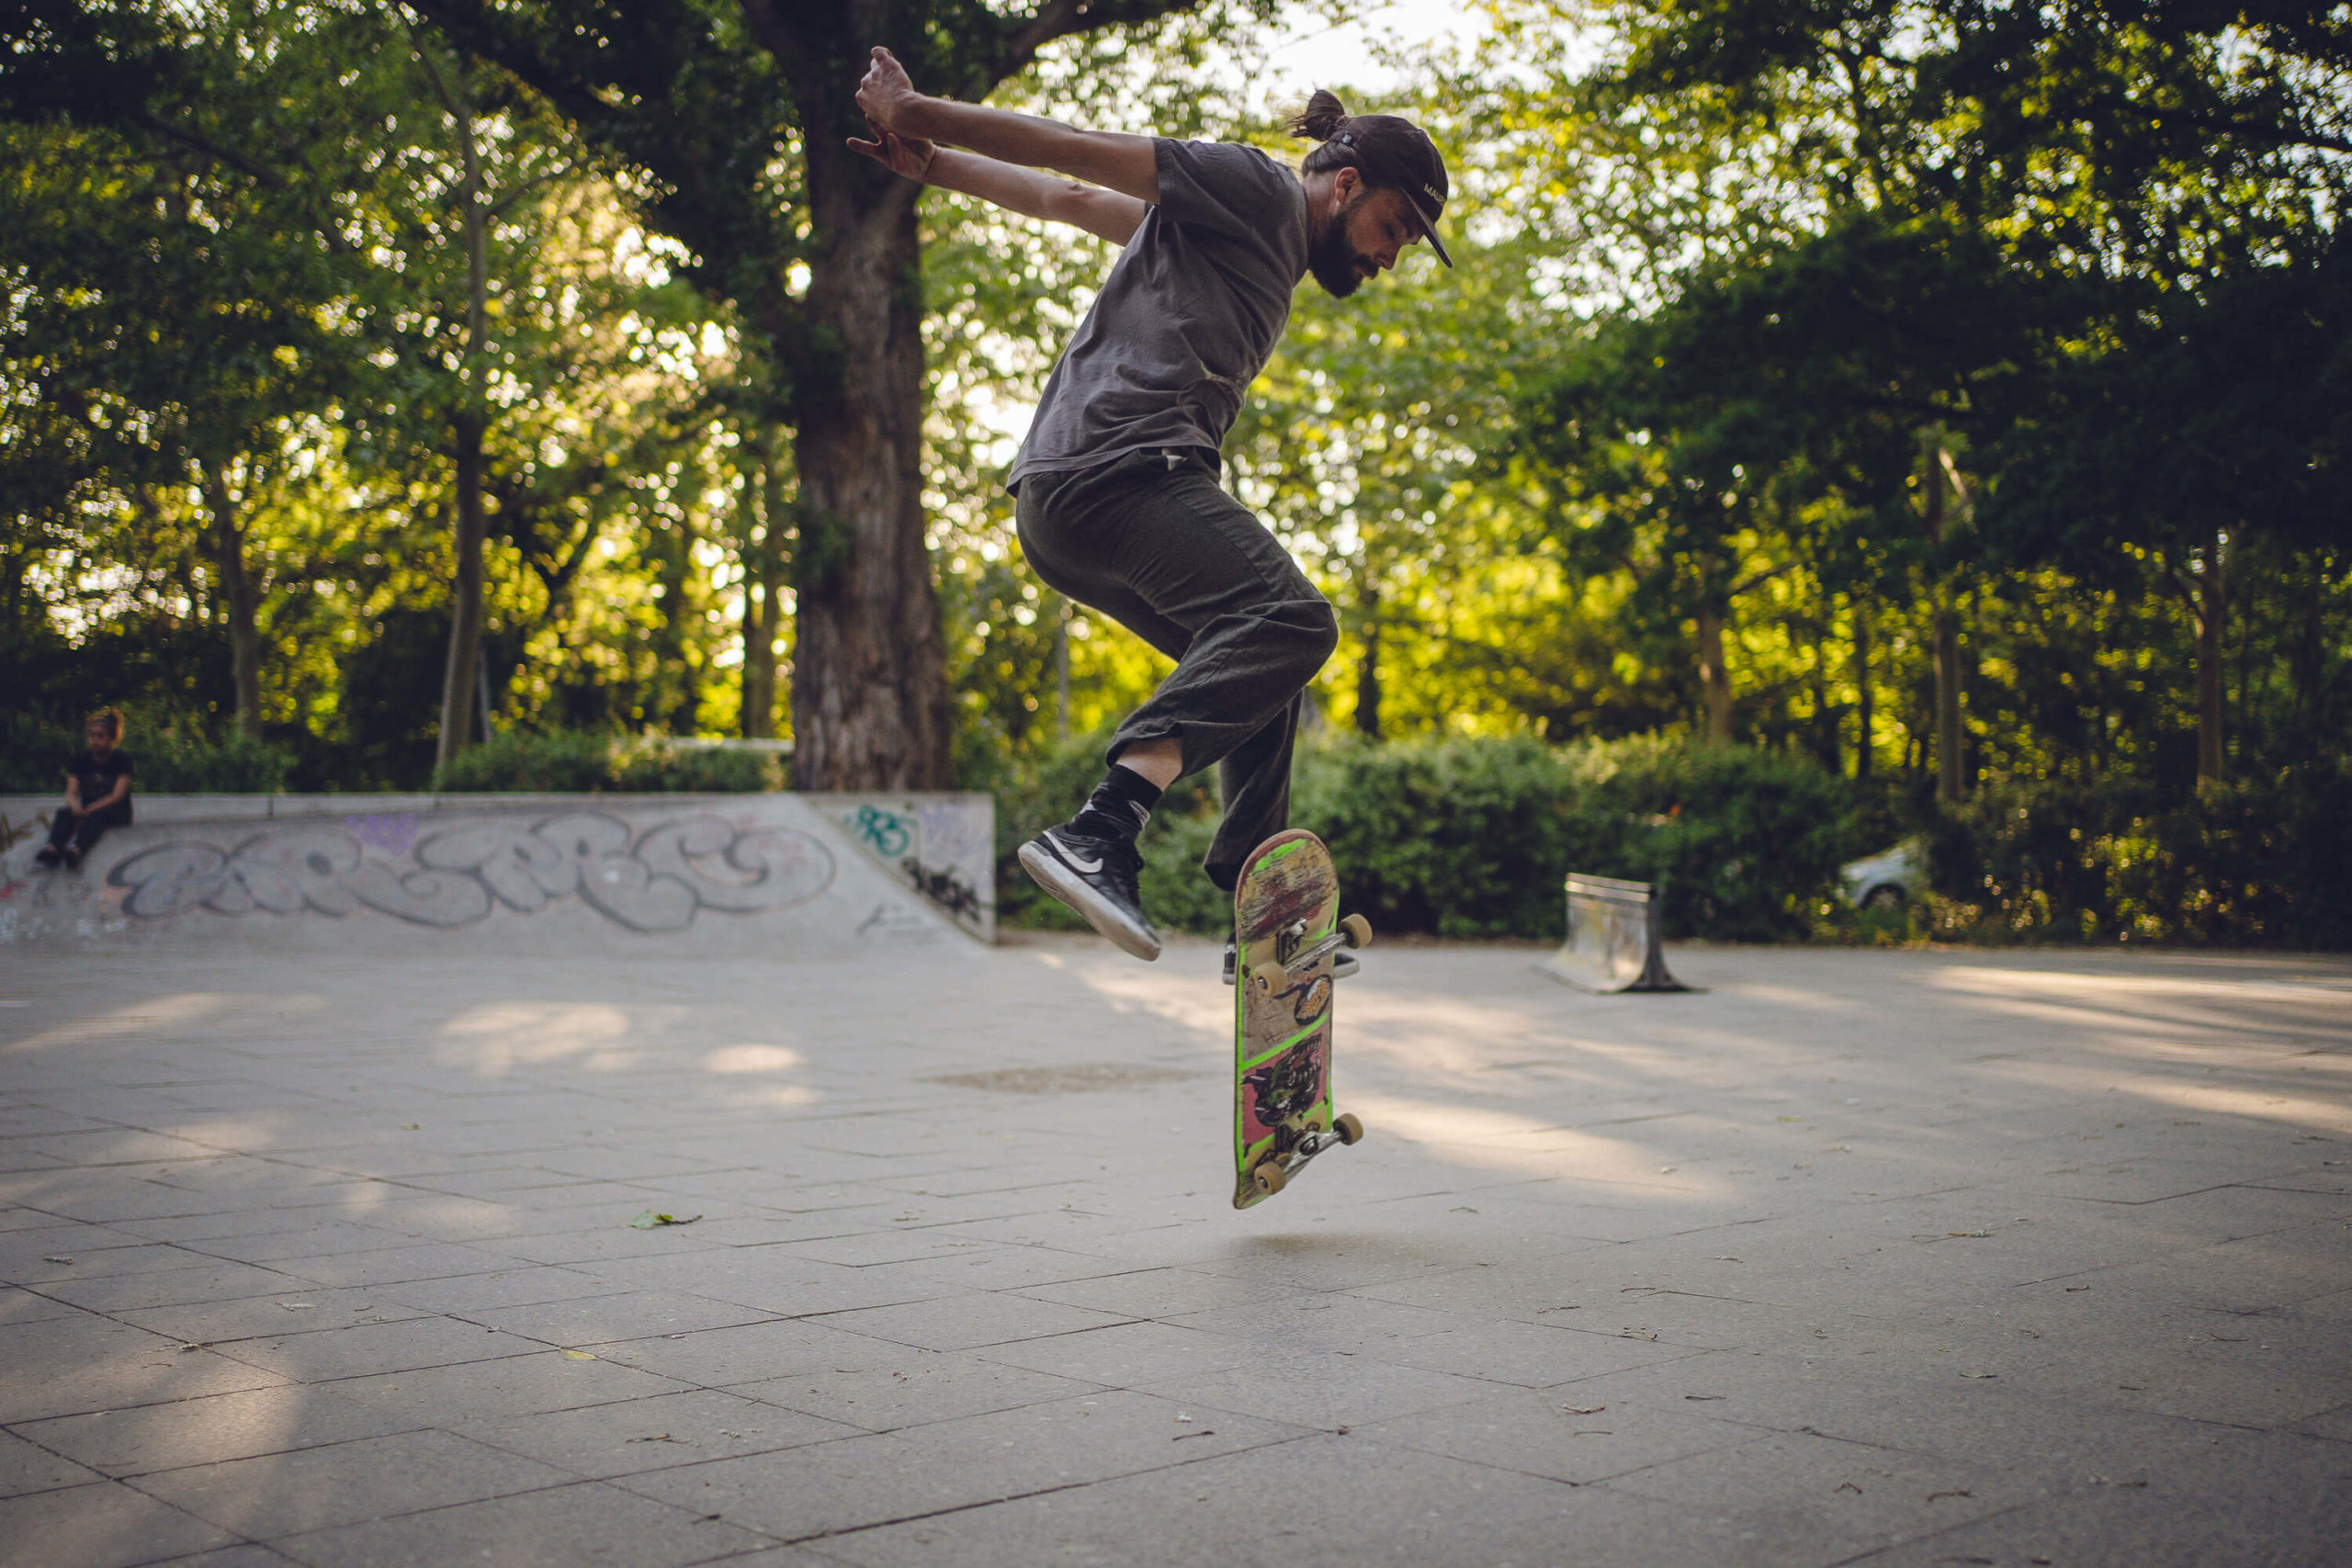 musician Finn of band Auburn light jumps with skate board in skate park Berlin